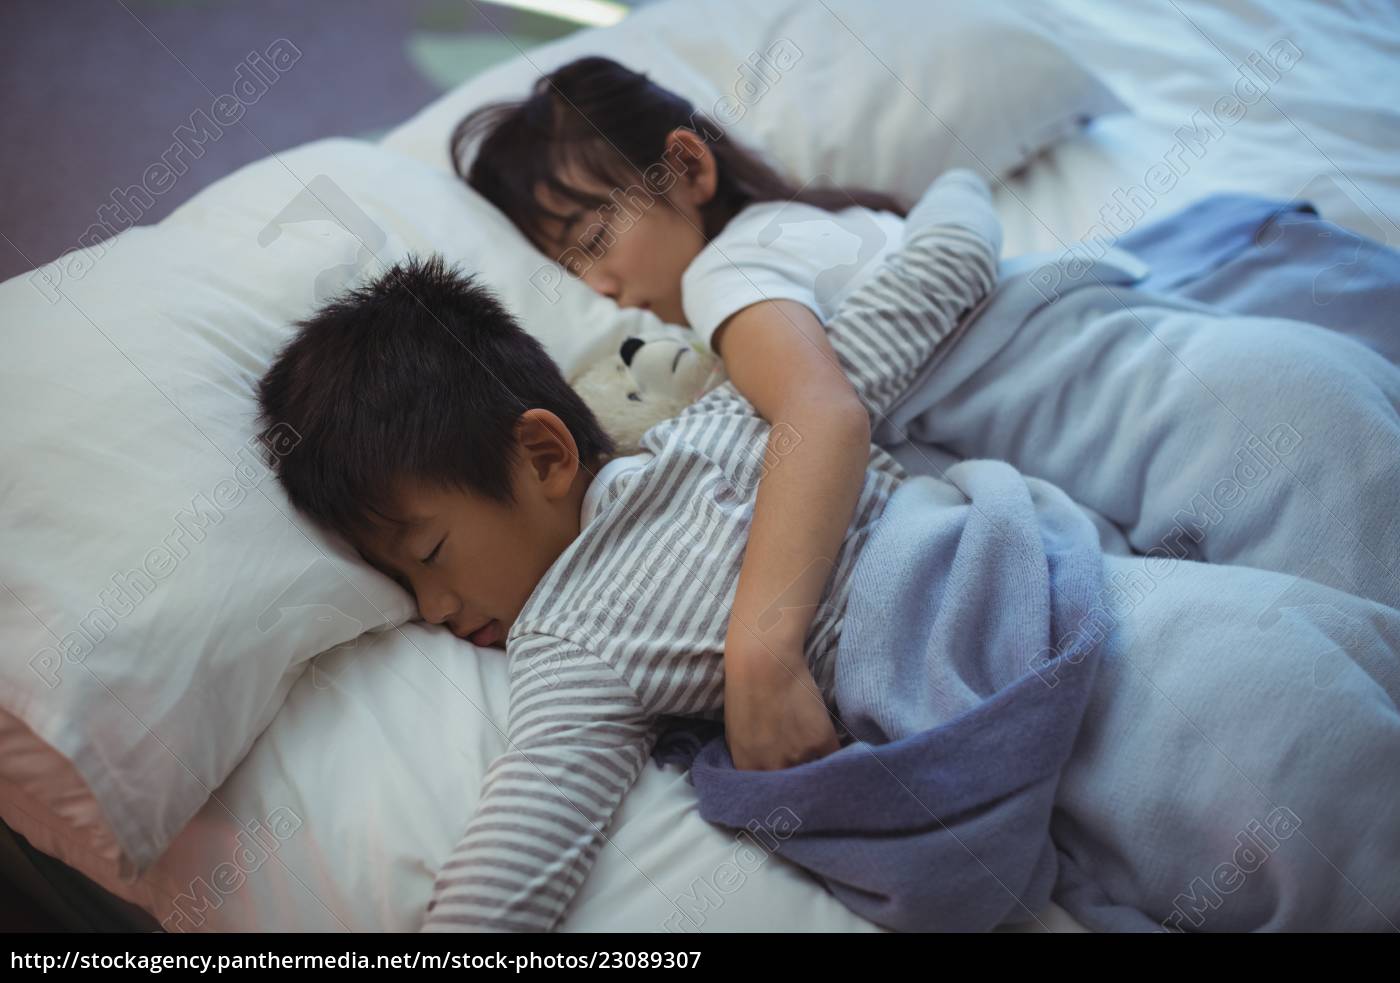 Брат зашел в комнату спящей сестры. Брат и сестра спят в одной постели. Брат и сестра в кровати. Спящей сестра японская.